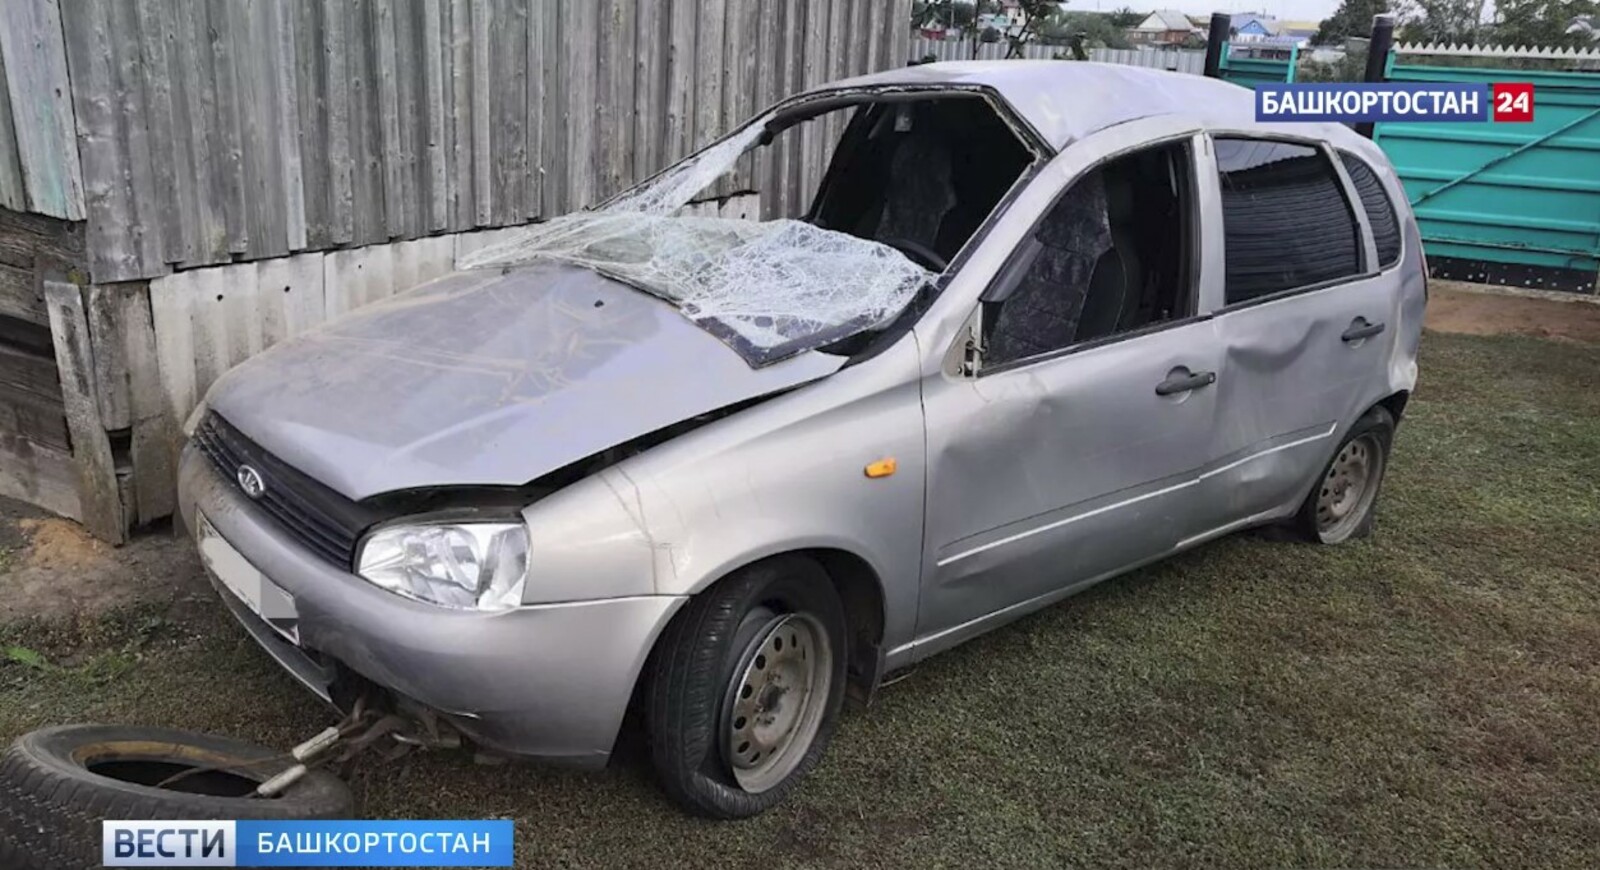 ДТП в Янаульском районе: по вине пьяного водителя пострадал пассажир